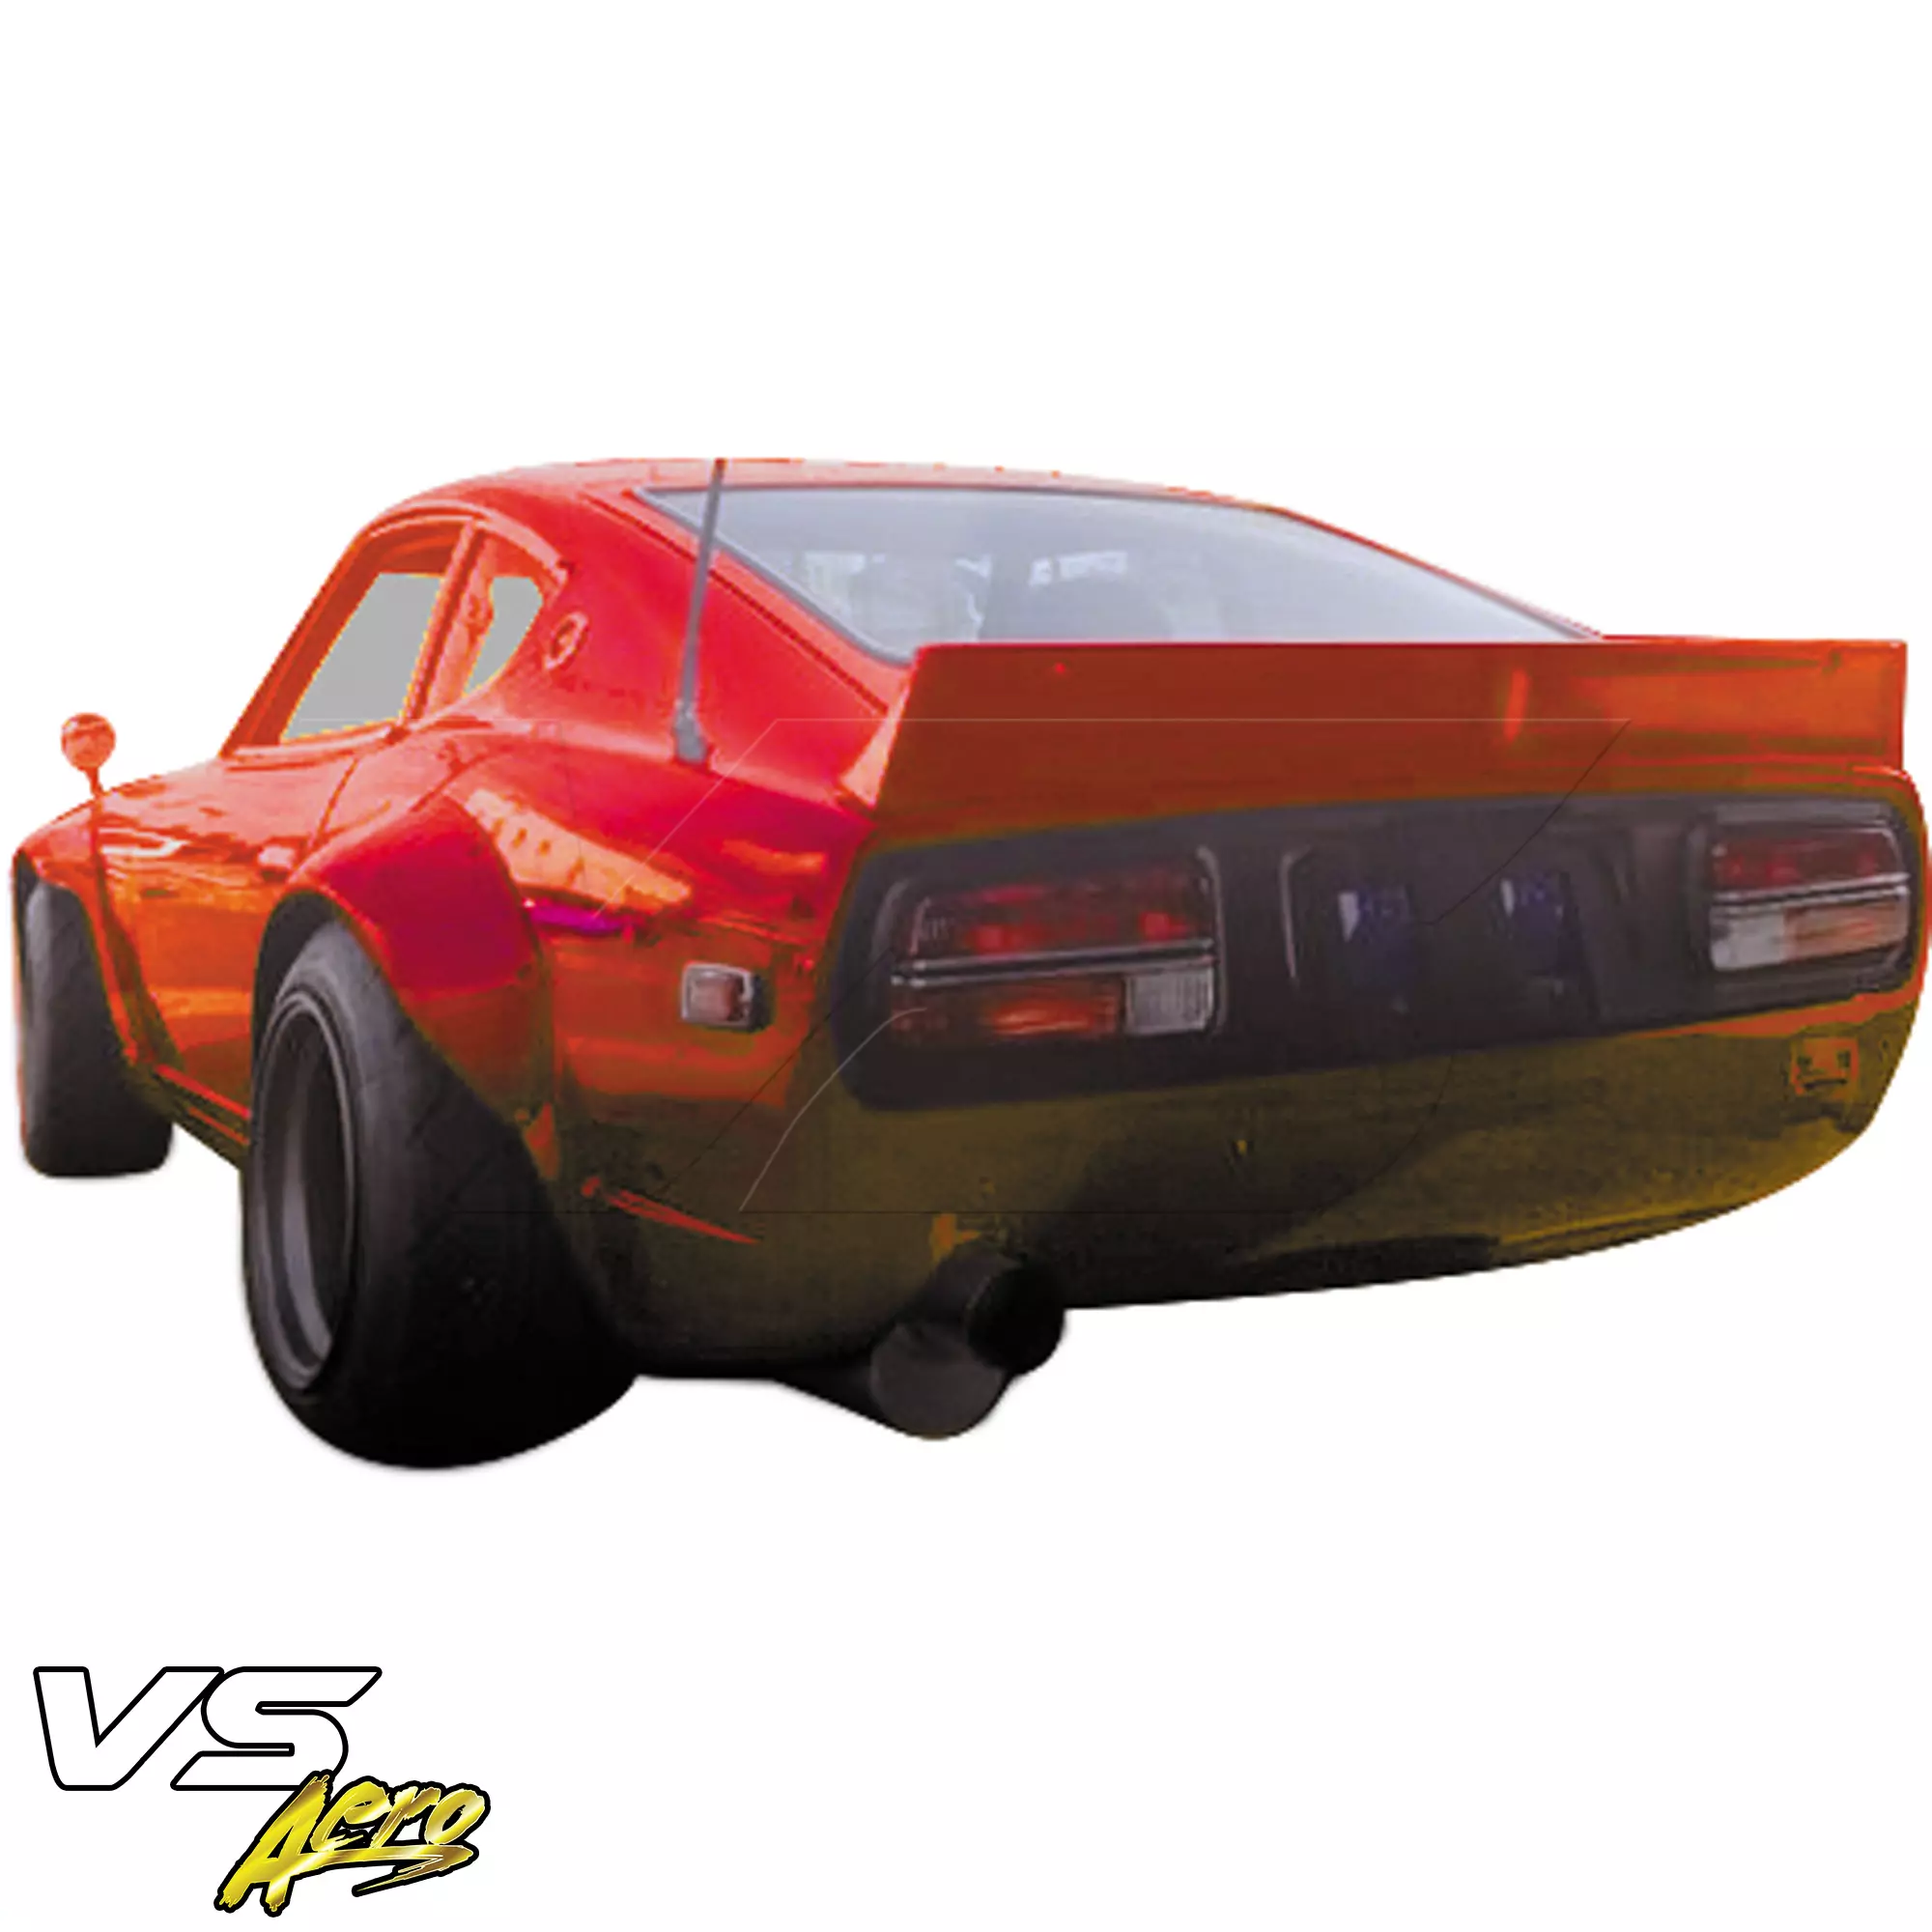 VSaero FRP TKYO Spoiler Wing > Datsun 240Z S30 1970-1973 > 2/4 Seater - Image 11